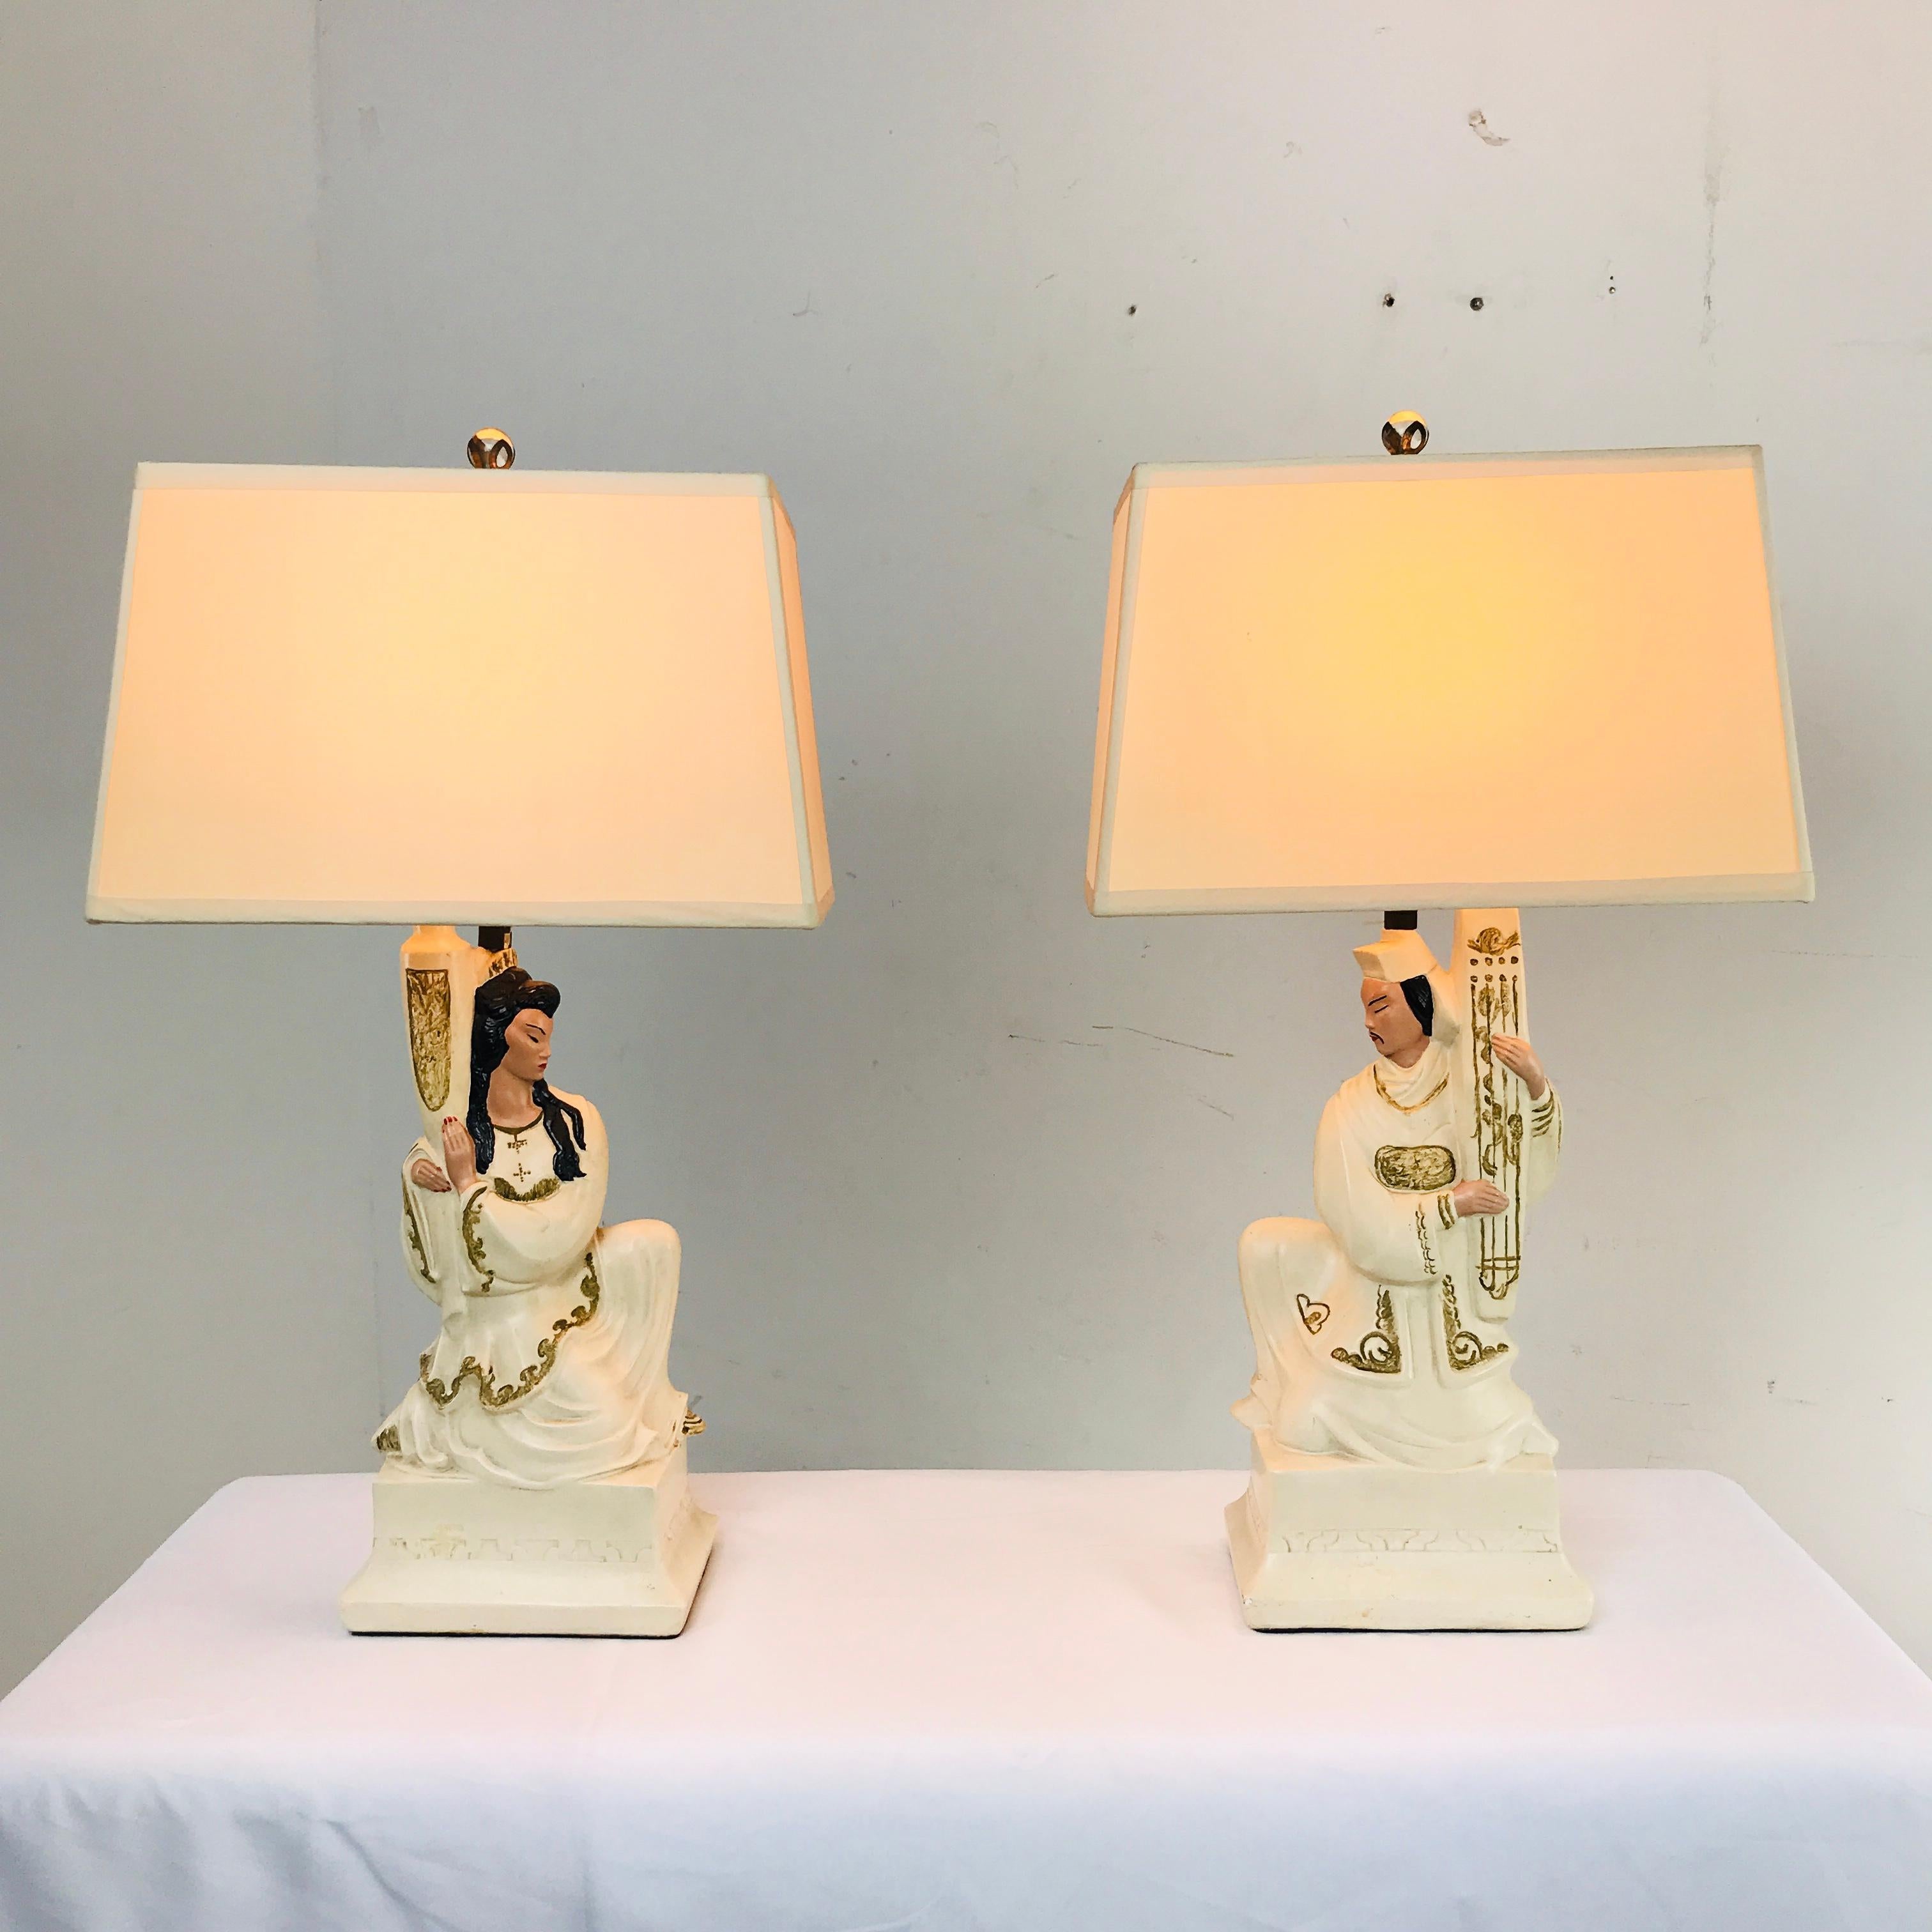 Die Lampen wurden professionell restauriert und neu verkabelt und mit maßgeschneiderten Lampenschirmen versehen. Skurril und lustig.